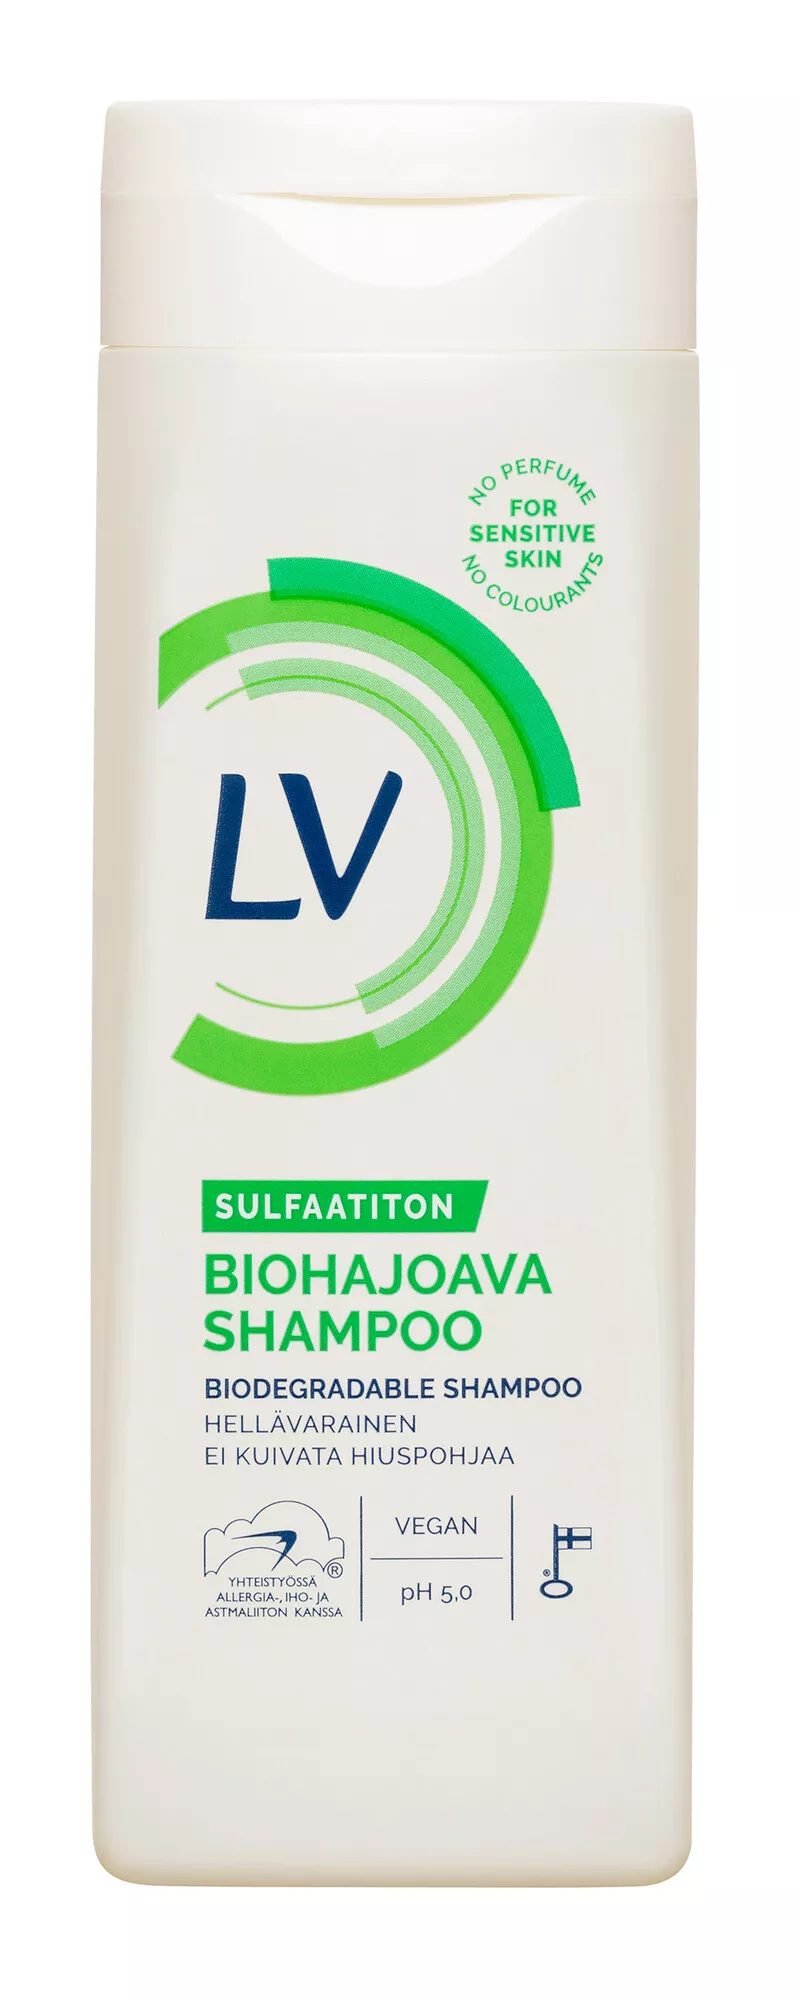 Biohajoava shampoo. LV Biohajoava sulfaatiton shampoo.